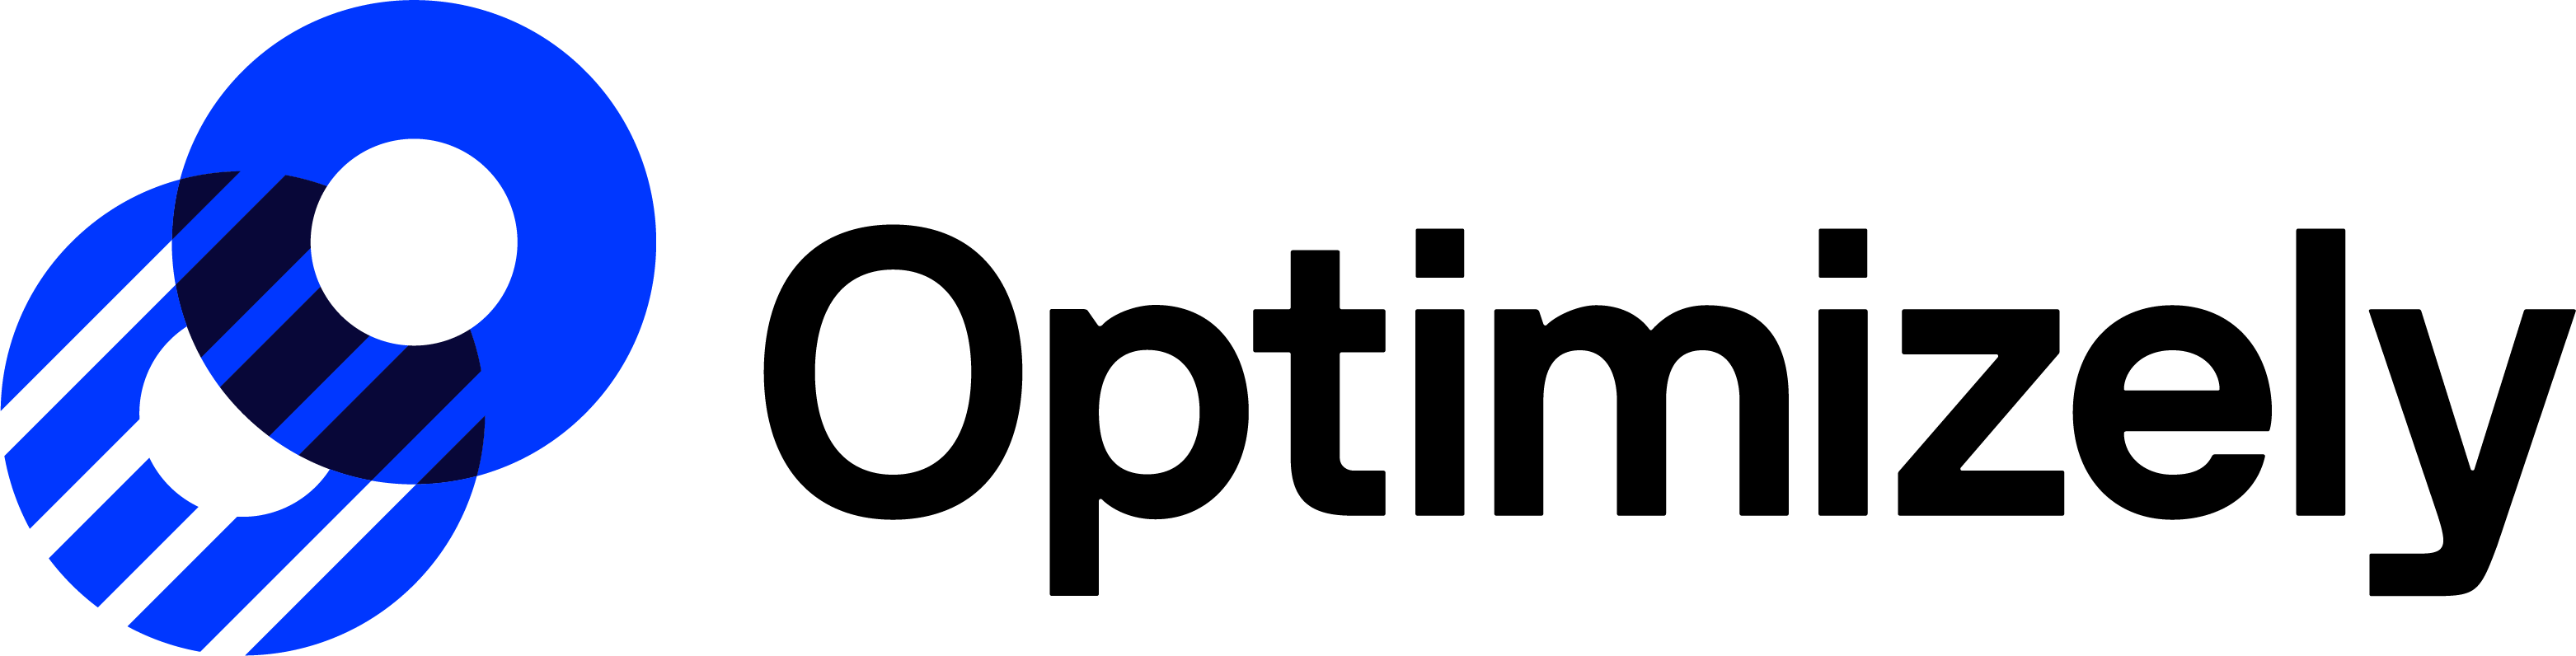 Логотип Optimizely